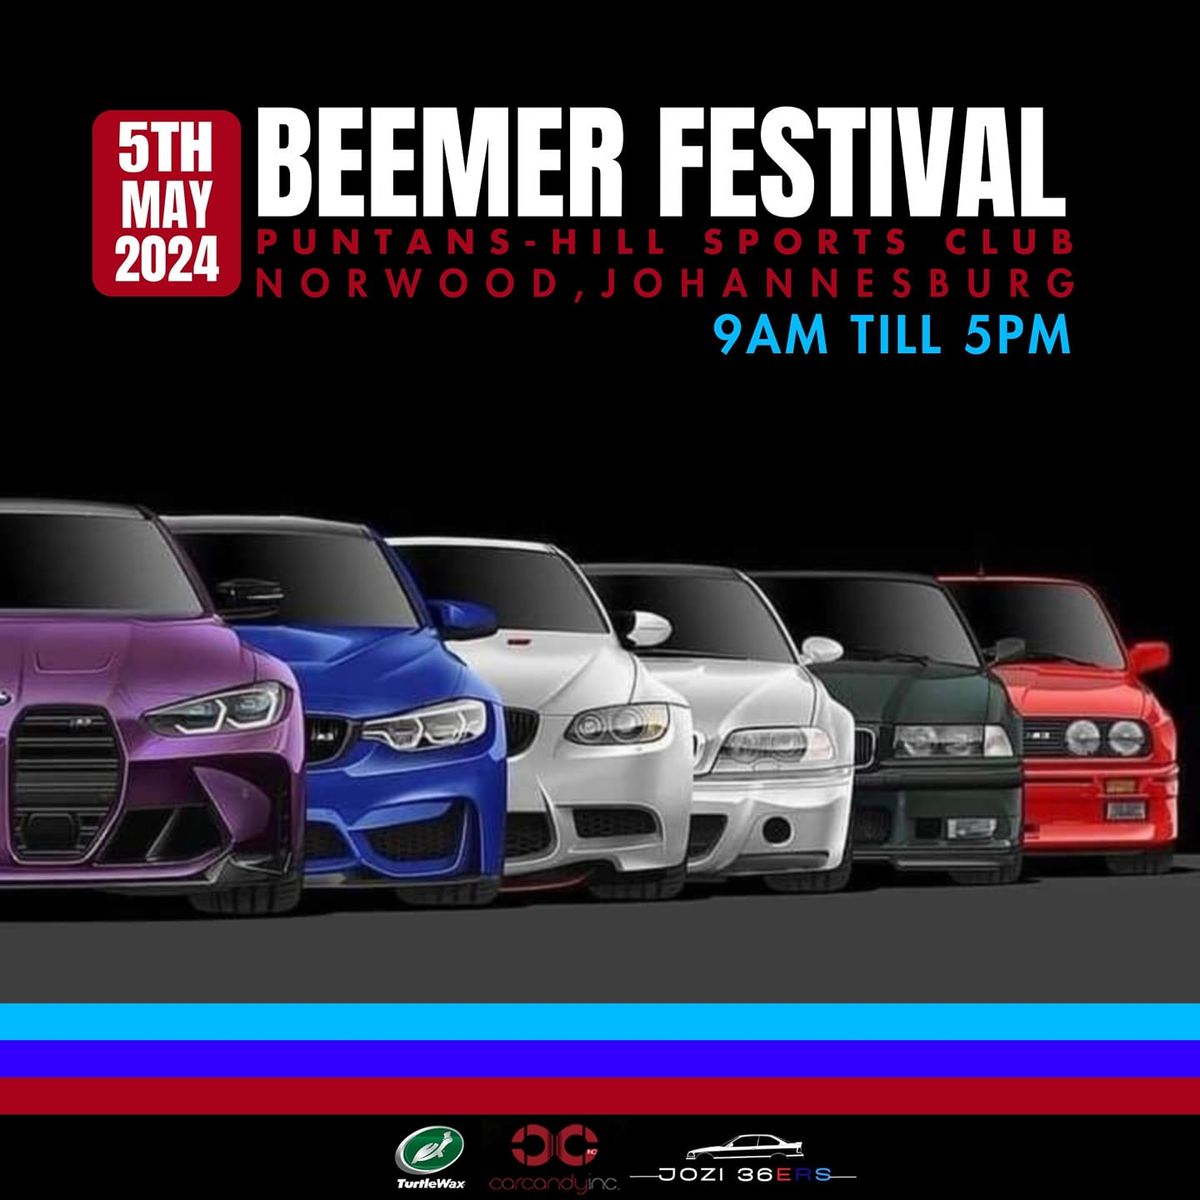 Beemer Festival 2024